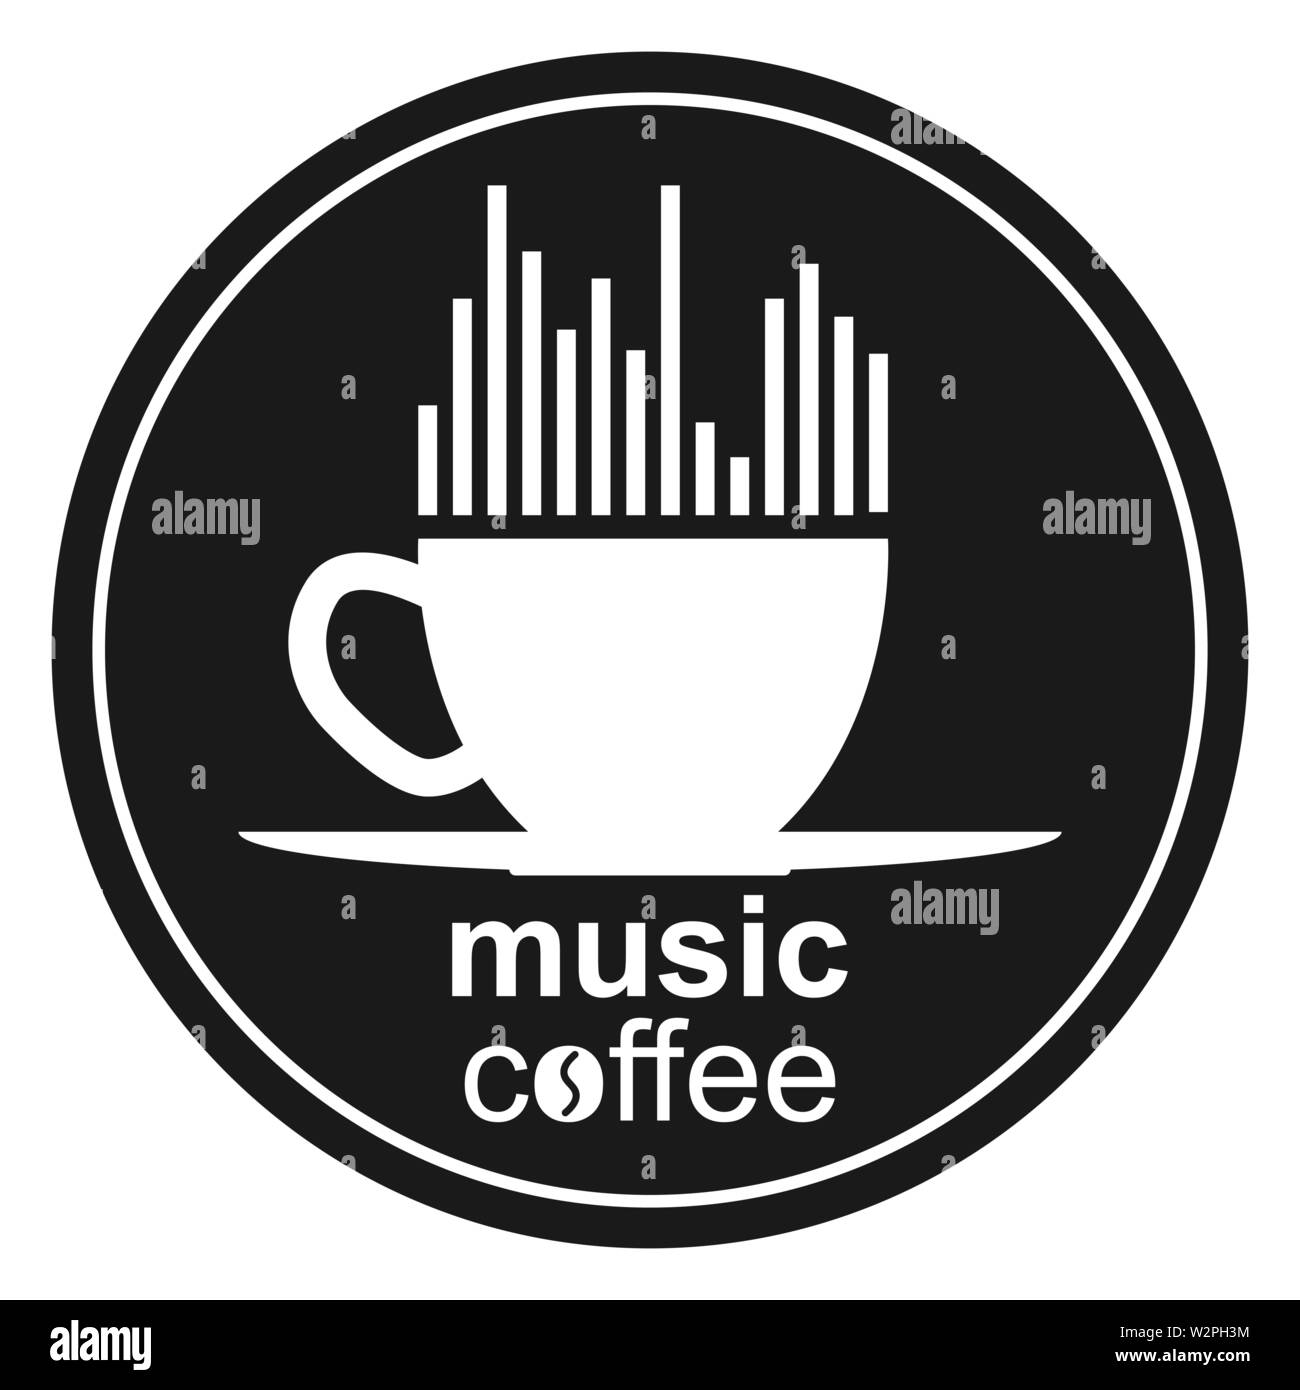 Tasse de café, spectre musical, du coeur et de la musique inscription café. Modèle pour le logo, la marque ou Bierdeckel. Illustration de Vecteur